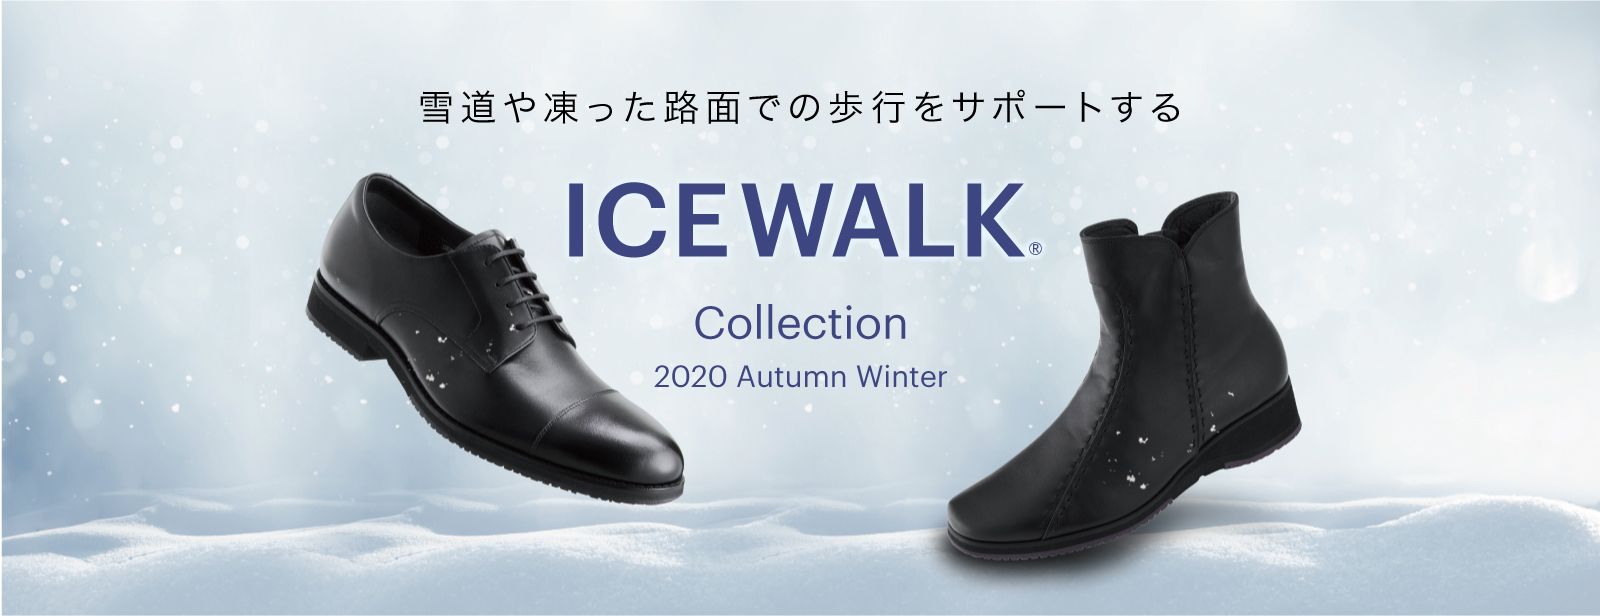 Wk Icewalk Collection